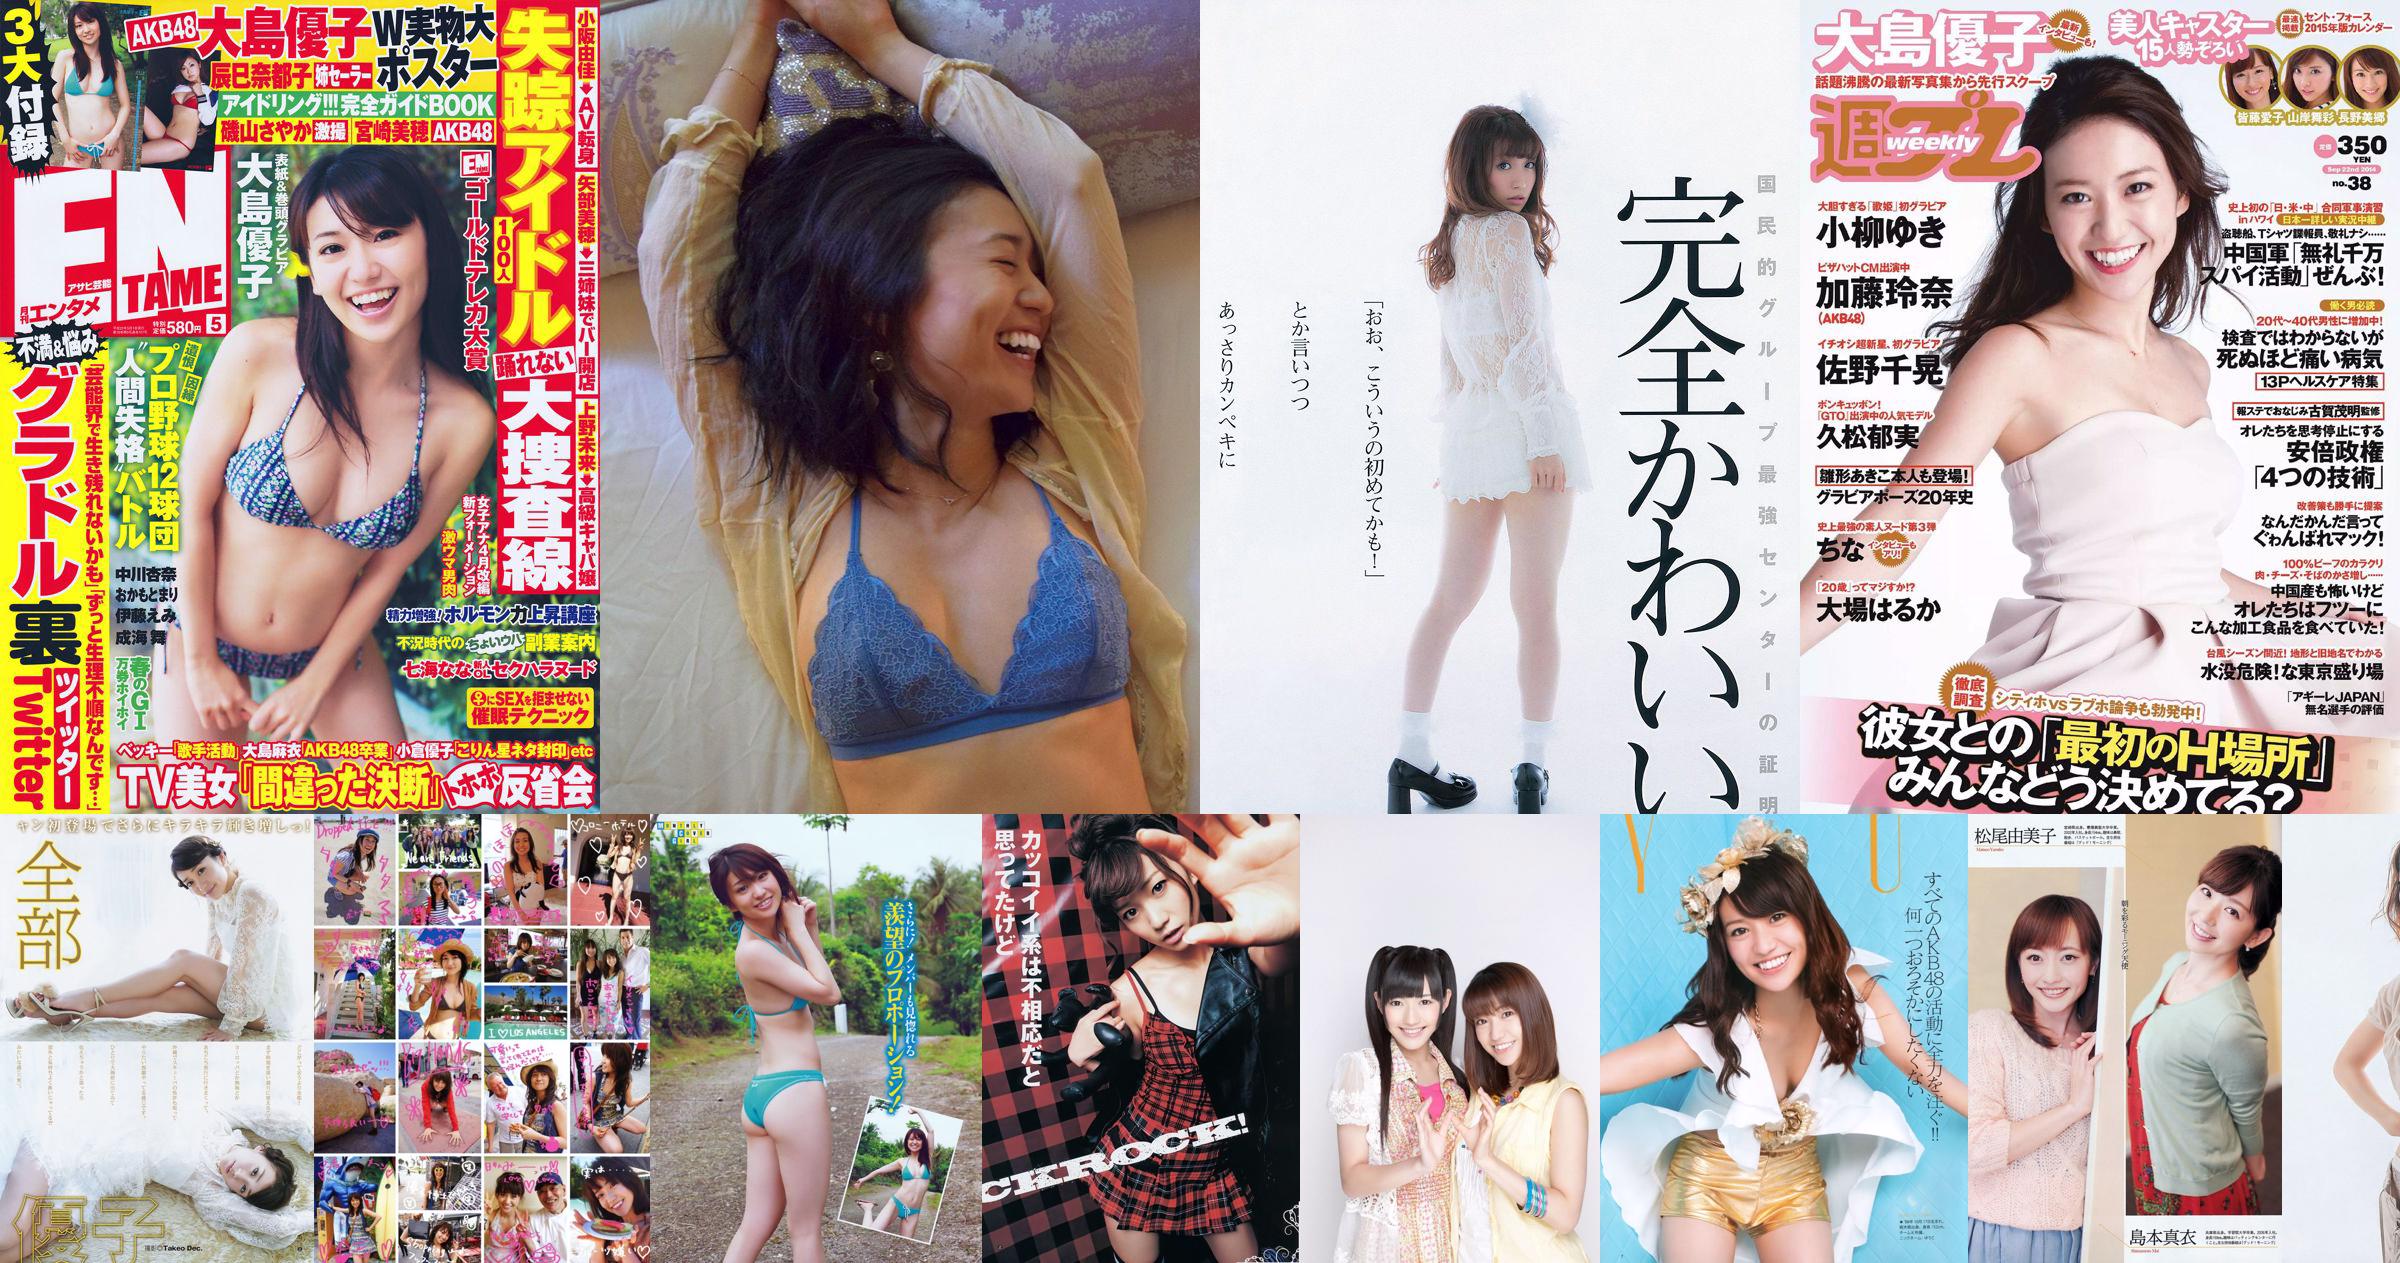 Oshima Yuko, Watanabe Mayu, Takanashi Rin, Iriyama Anna, Eagle Feather Mio, Matsuo Irijia, Shimizu Fumika [Weekly Playboy] 2013 No.22 Photo Magazine No.1824dc Page 3